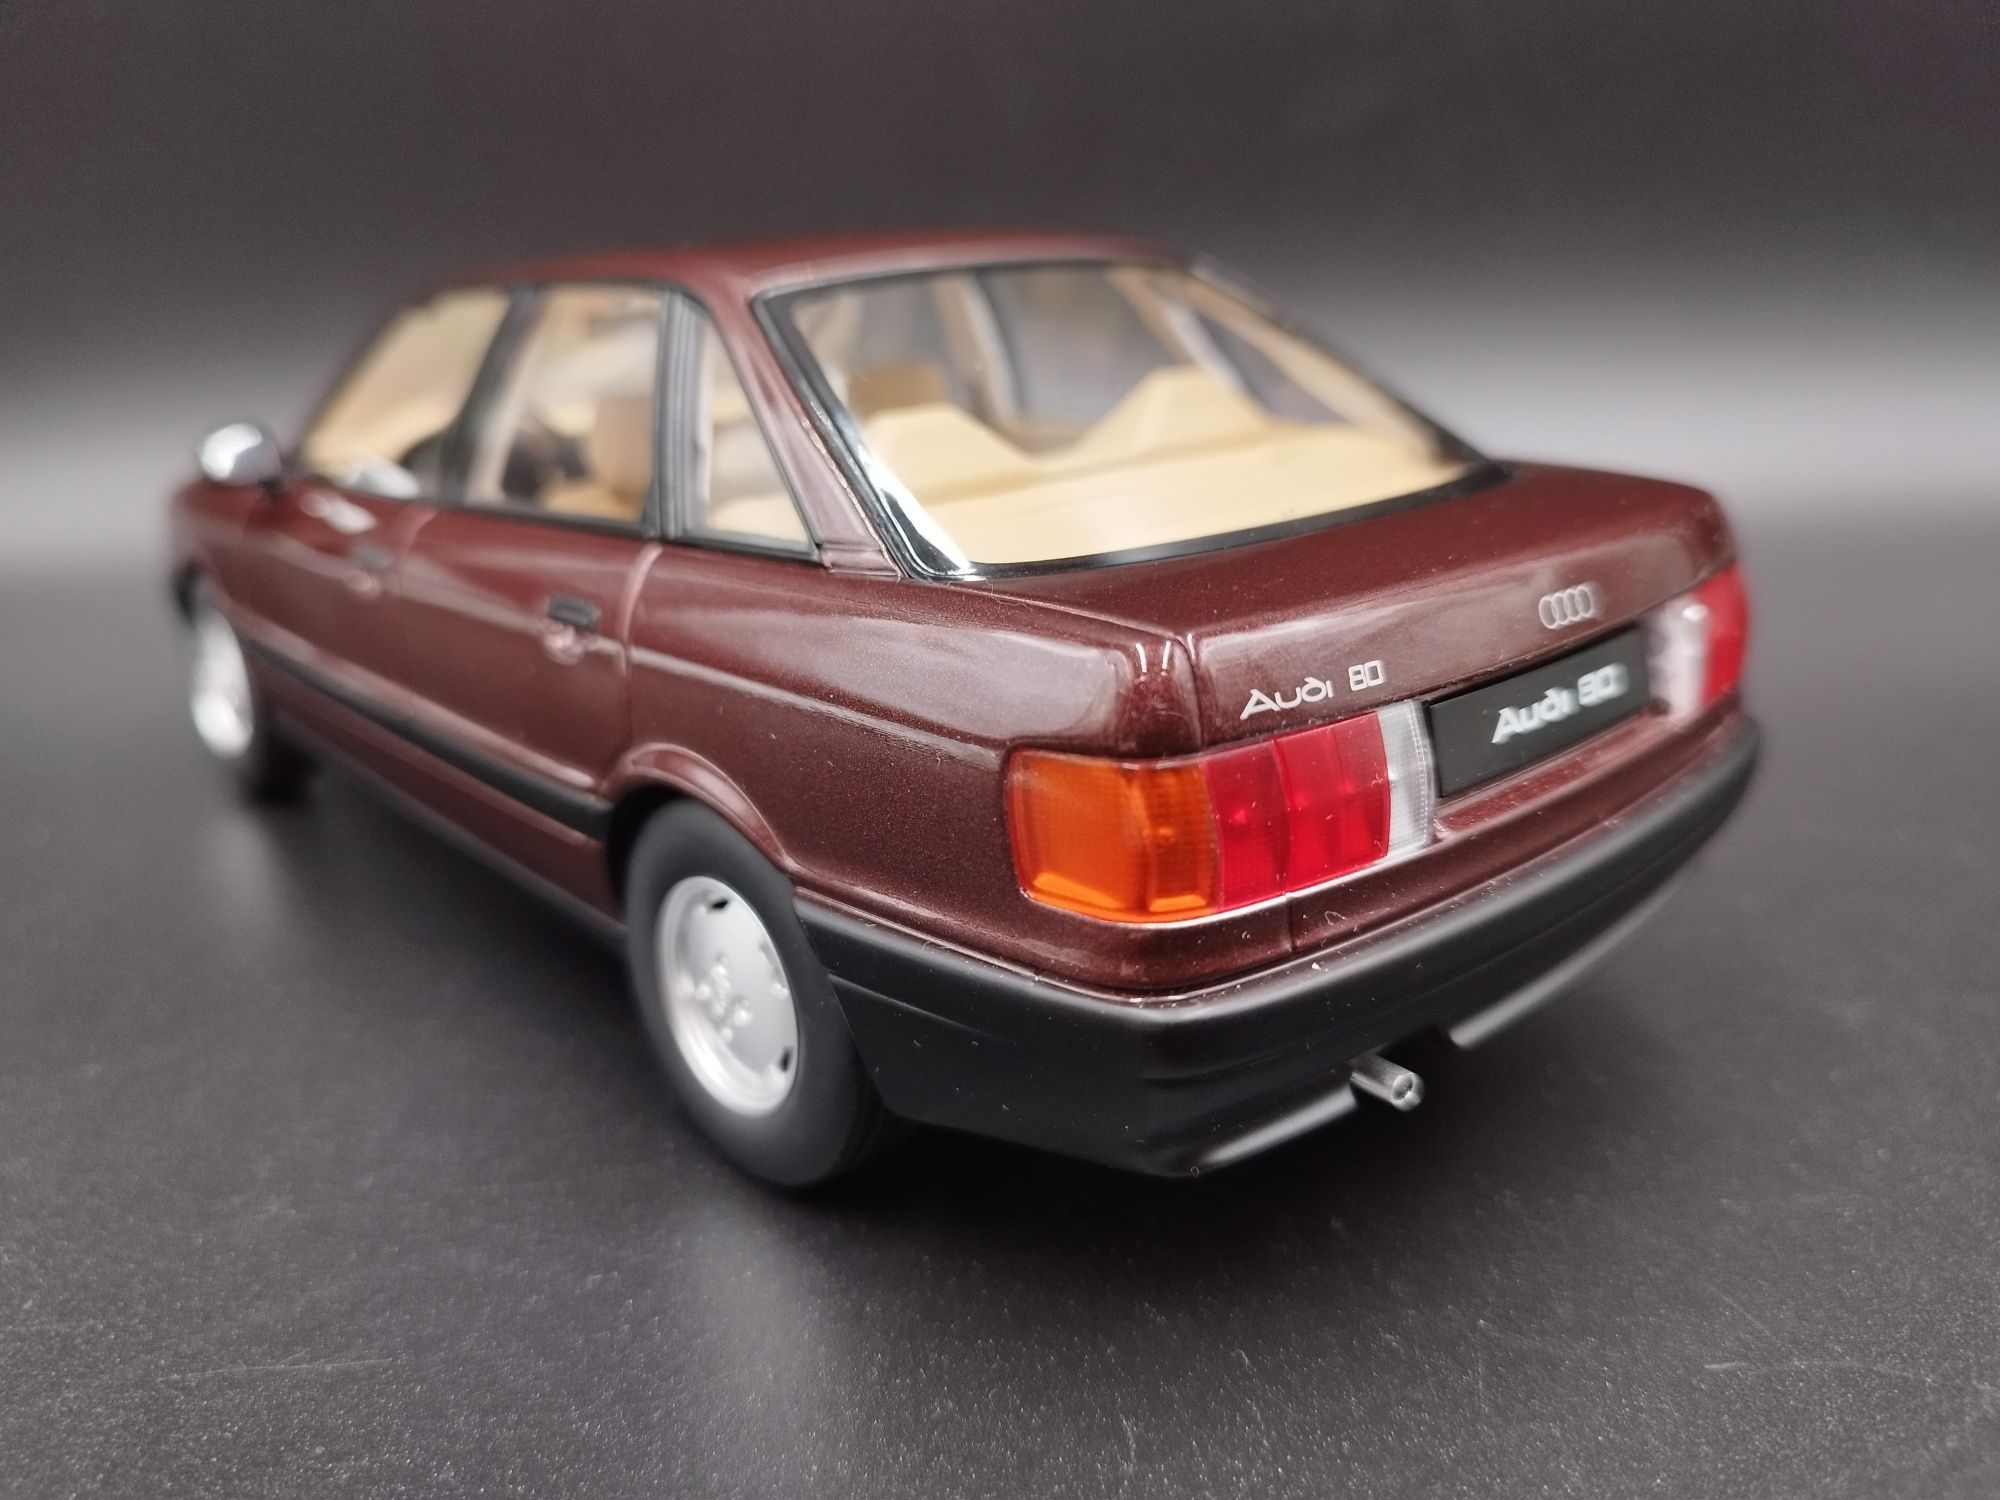 1:18 Triple9 1989 Audi 80 B3 model nowy